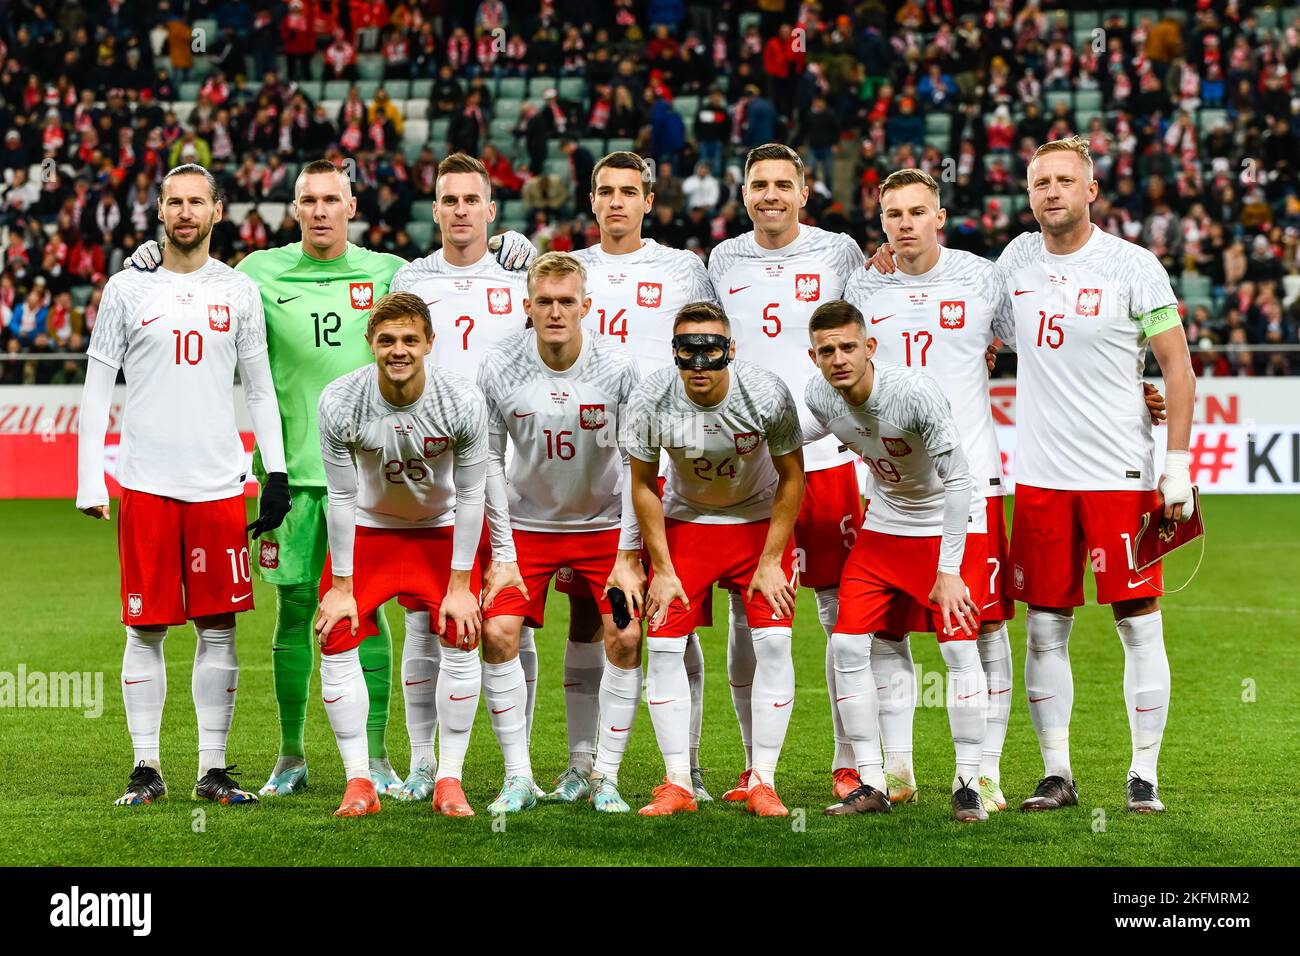 WARSZAWA, POLEN - 16. NOVEMBER 2022: Fußballfreundschaftsspiel Polen gegen Chile 1:0. Polen vor dem Spiel. Stockfoto